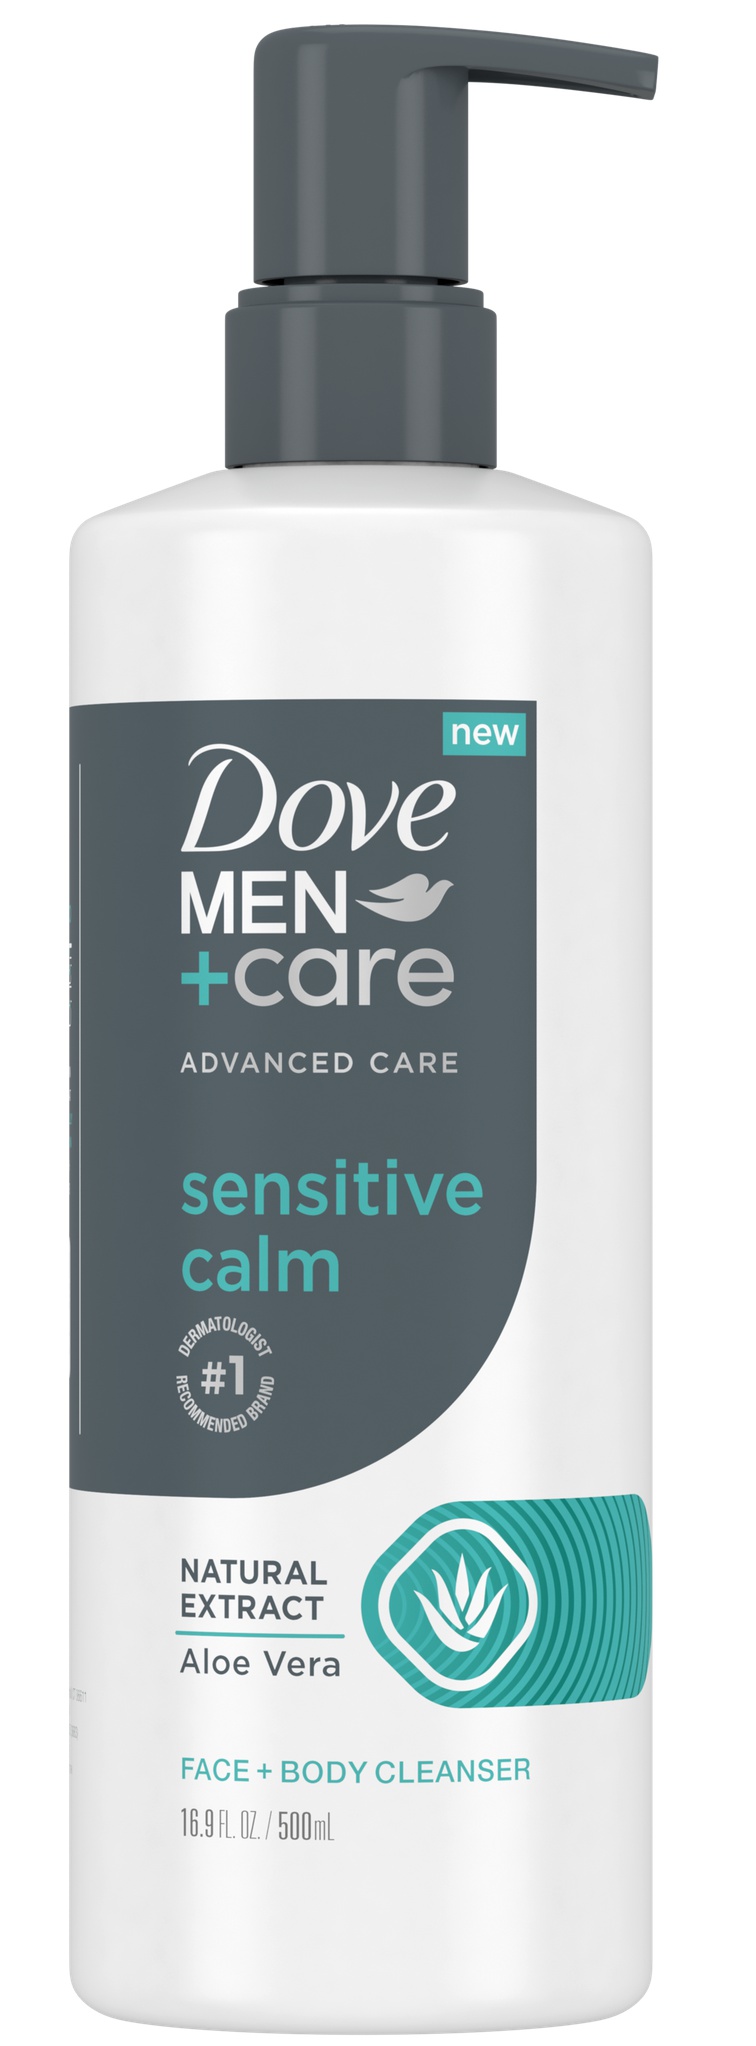 Dove Men+care Advanced Care Sensitive Calm Face + Body Wash